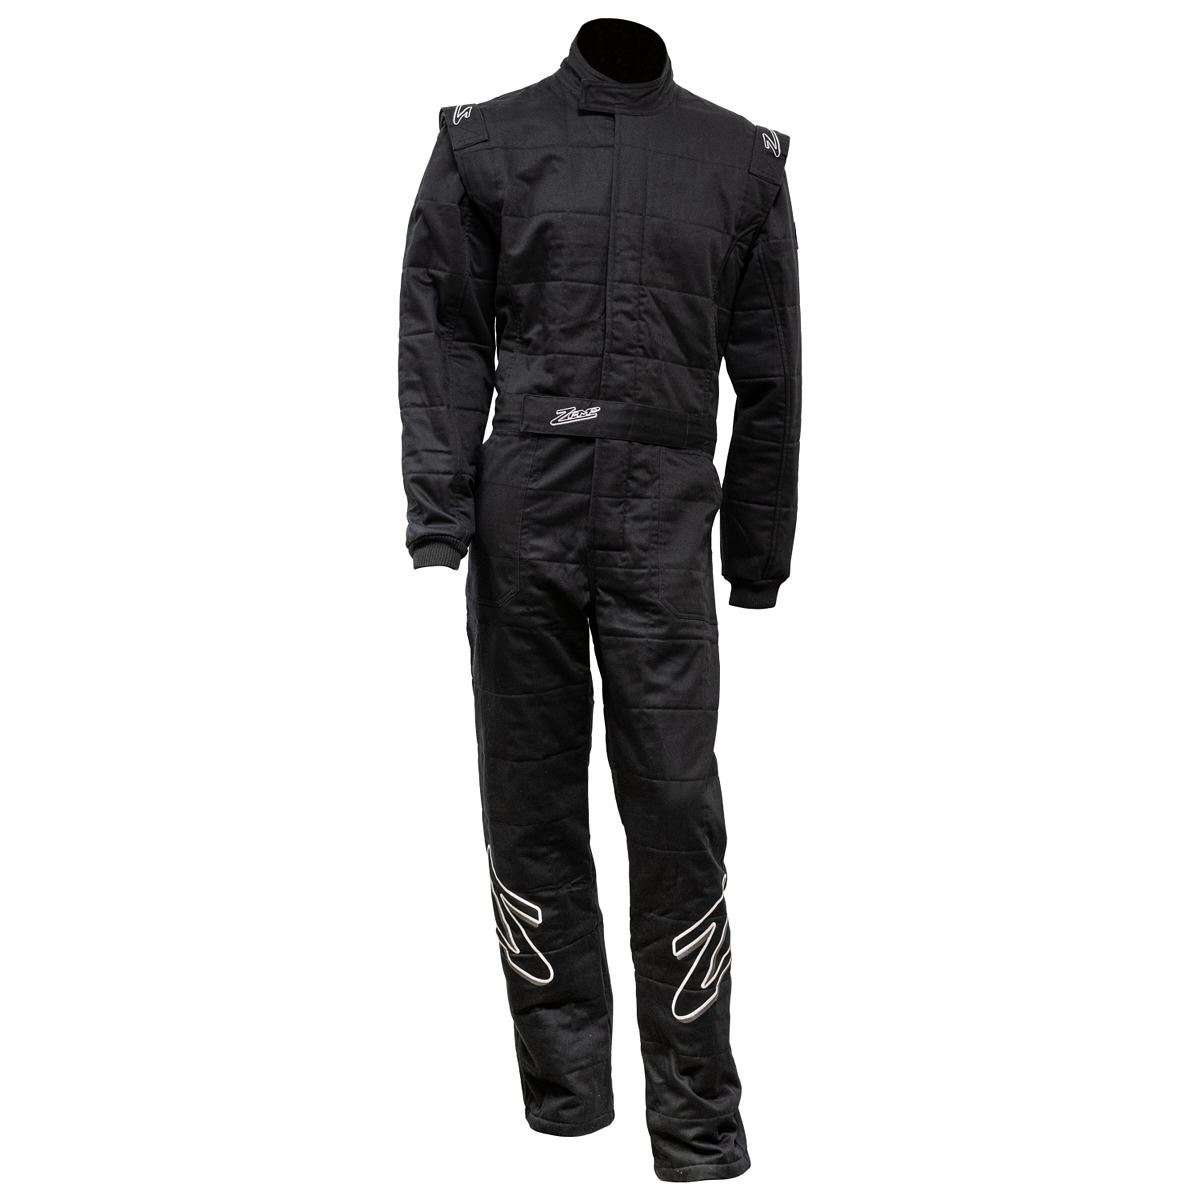 ZAMP Suit ZR-30 XX-Lrg Black SFI3.2A/5